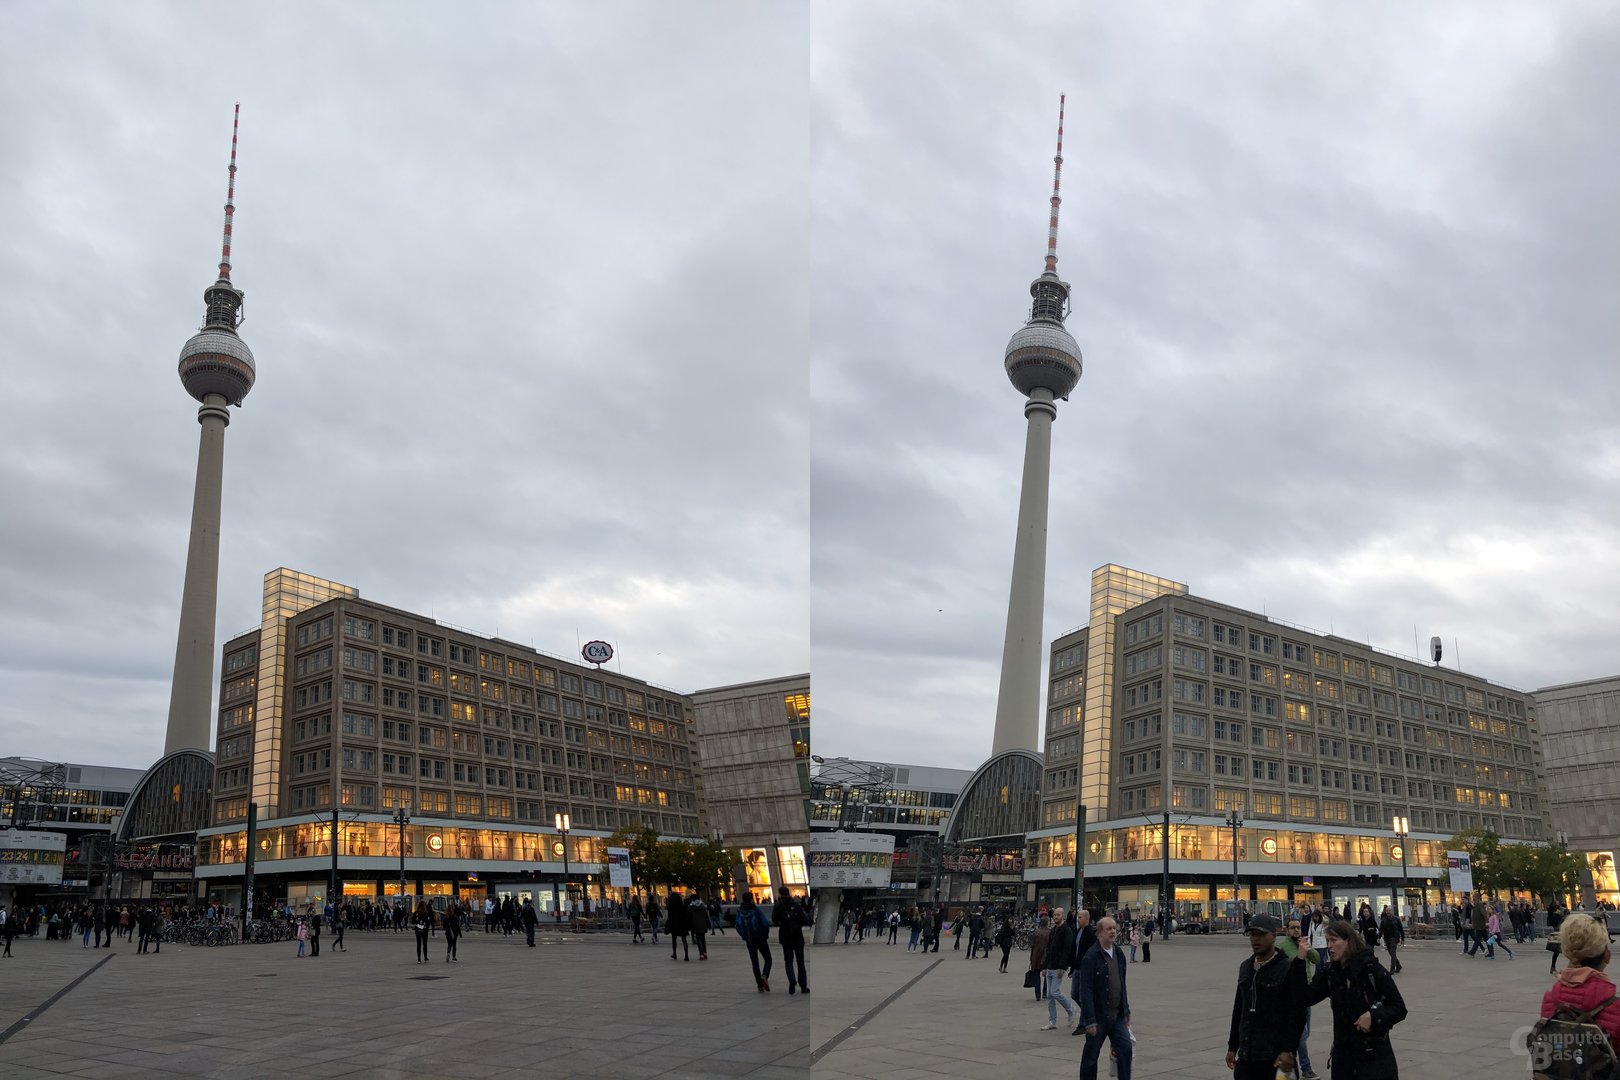 Pixel 2 (XL) (links) vs. iPhone 8 Plus (rechts)